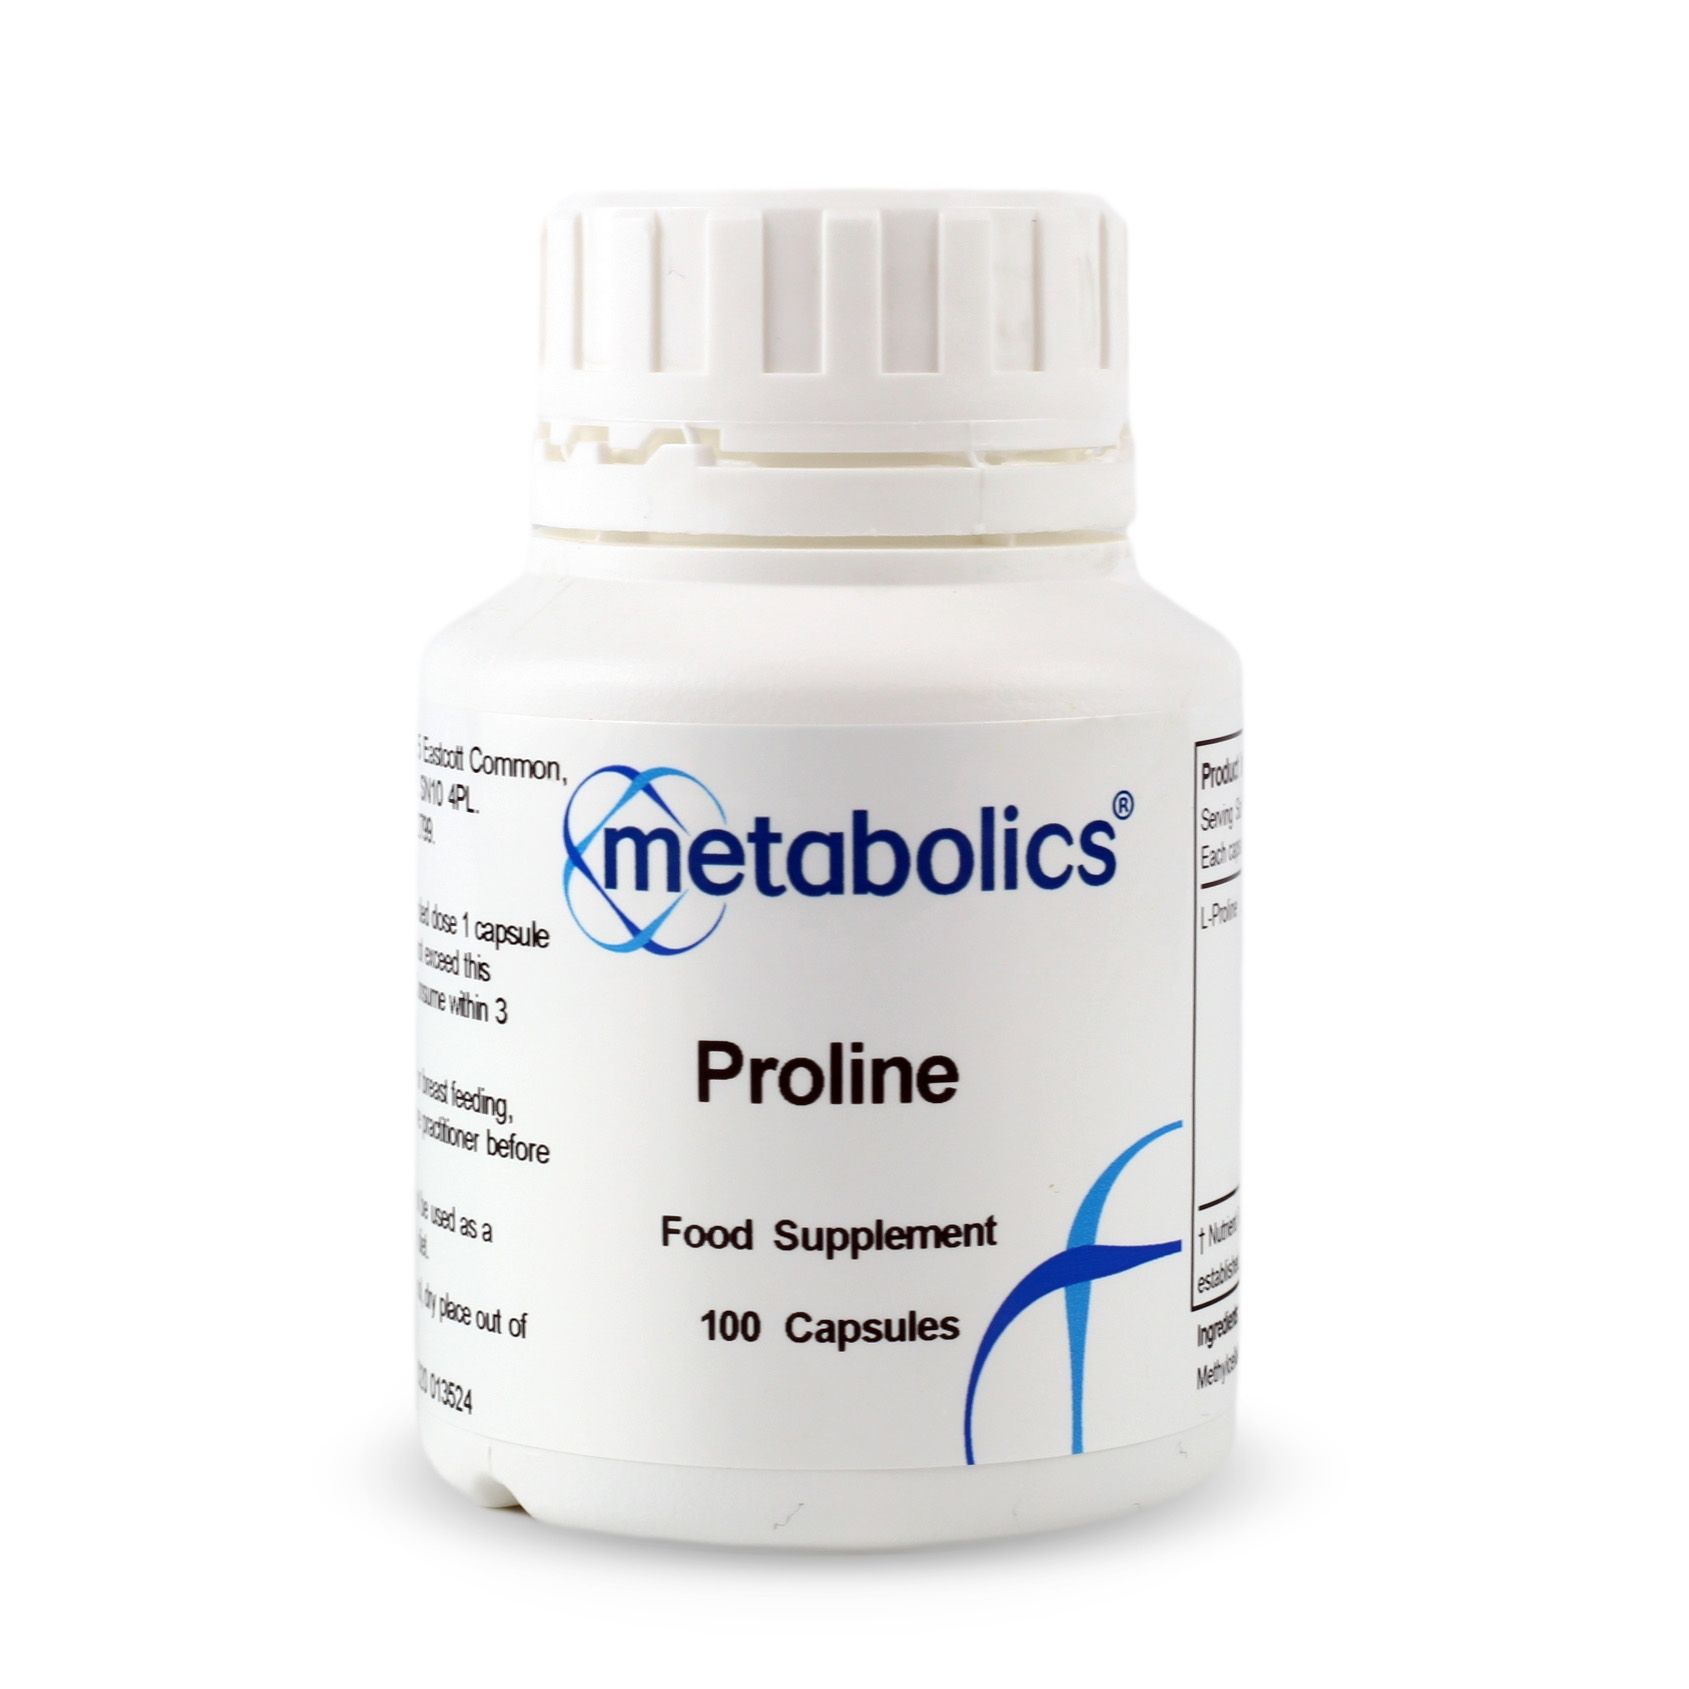 Proline (Pot of 100 capsules)